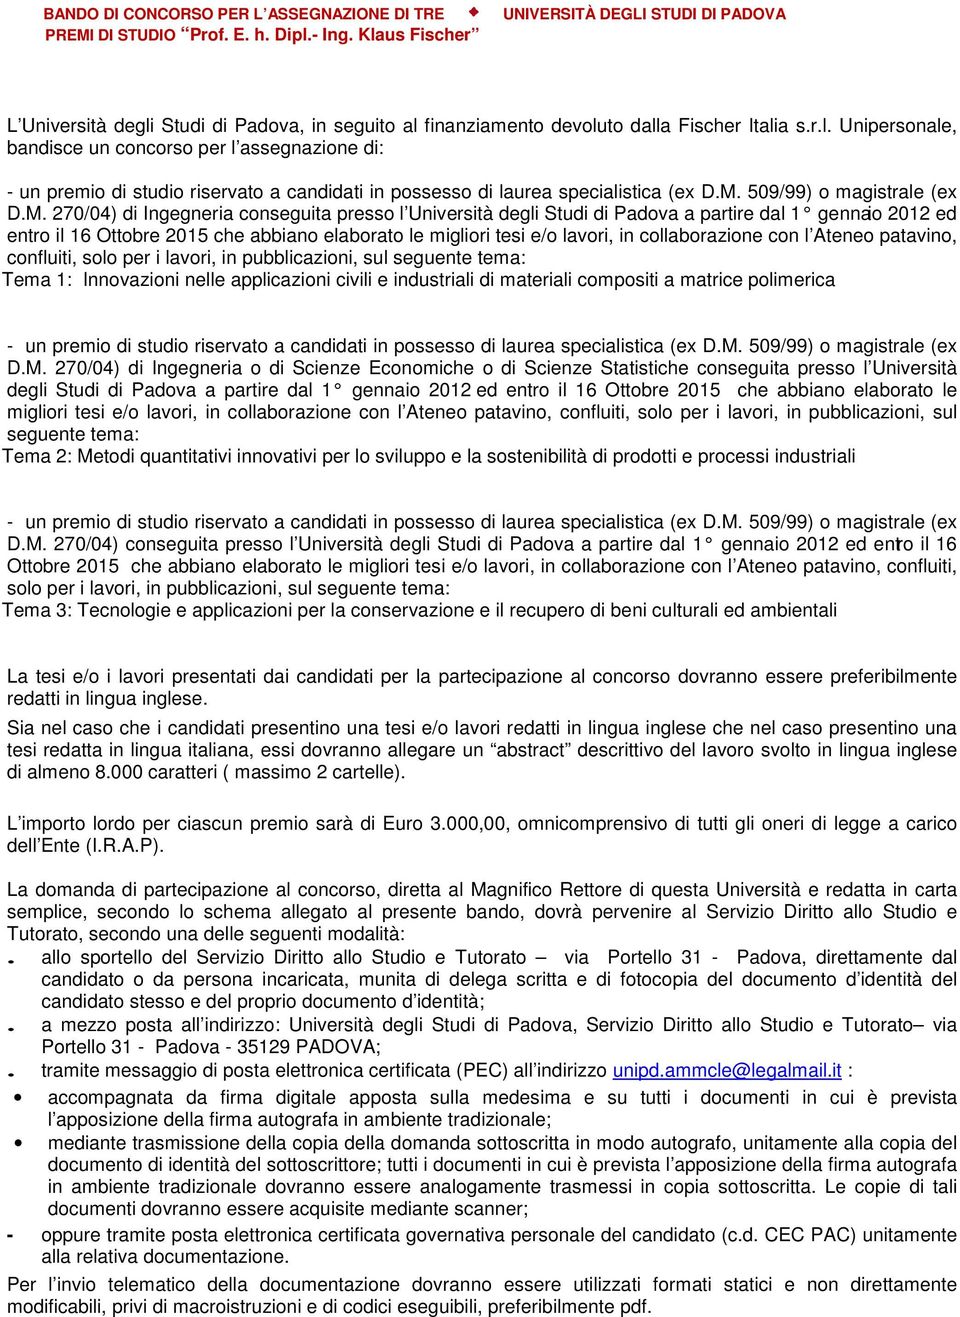 M. 509/99) o magistrale (ex D.M. 270/04) di Ingegneria conseguita presso l Università degli Studi di Padova a partire dal 1 gennaio 2012 ed entro il 16 Ottobre 2015 che abbiano elaborato le migliori